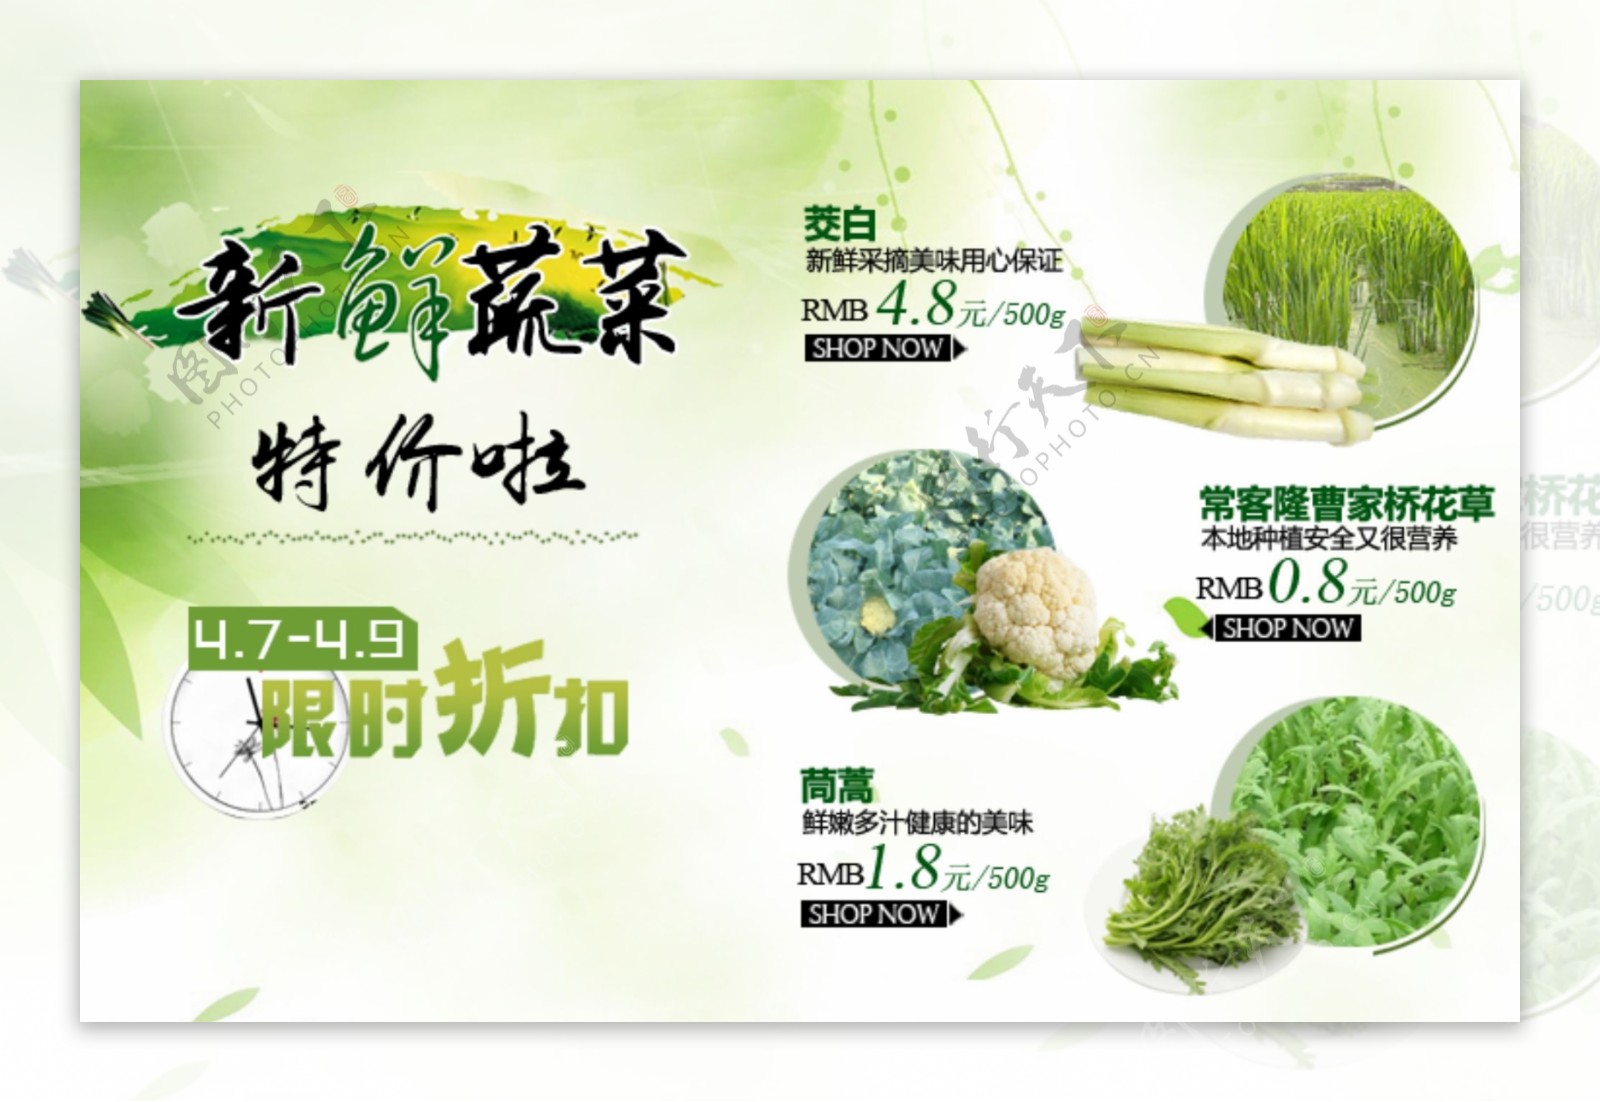 蔬菜特价促销活动海报